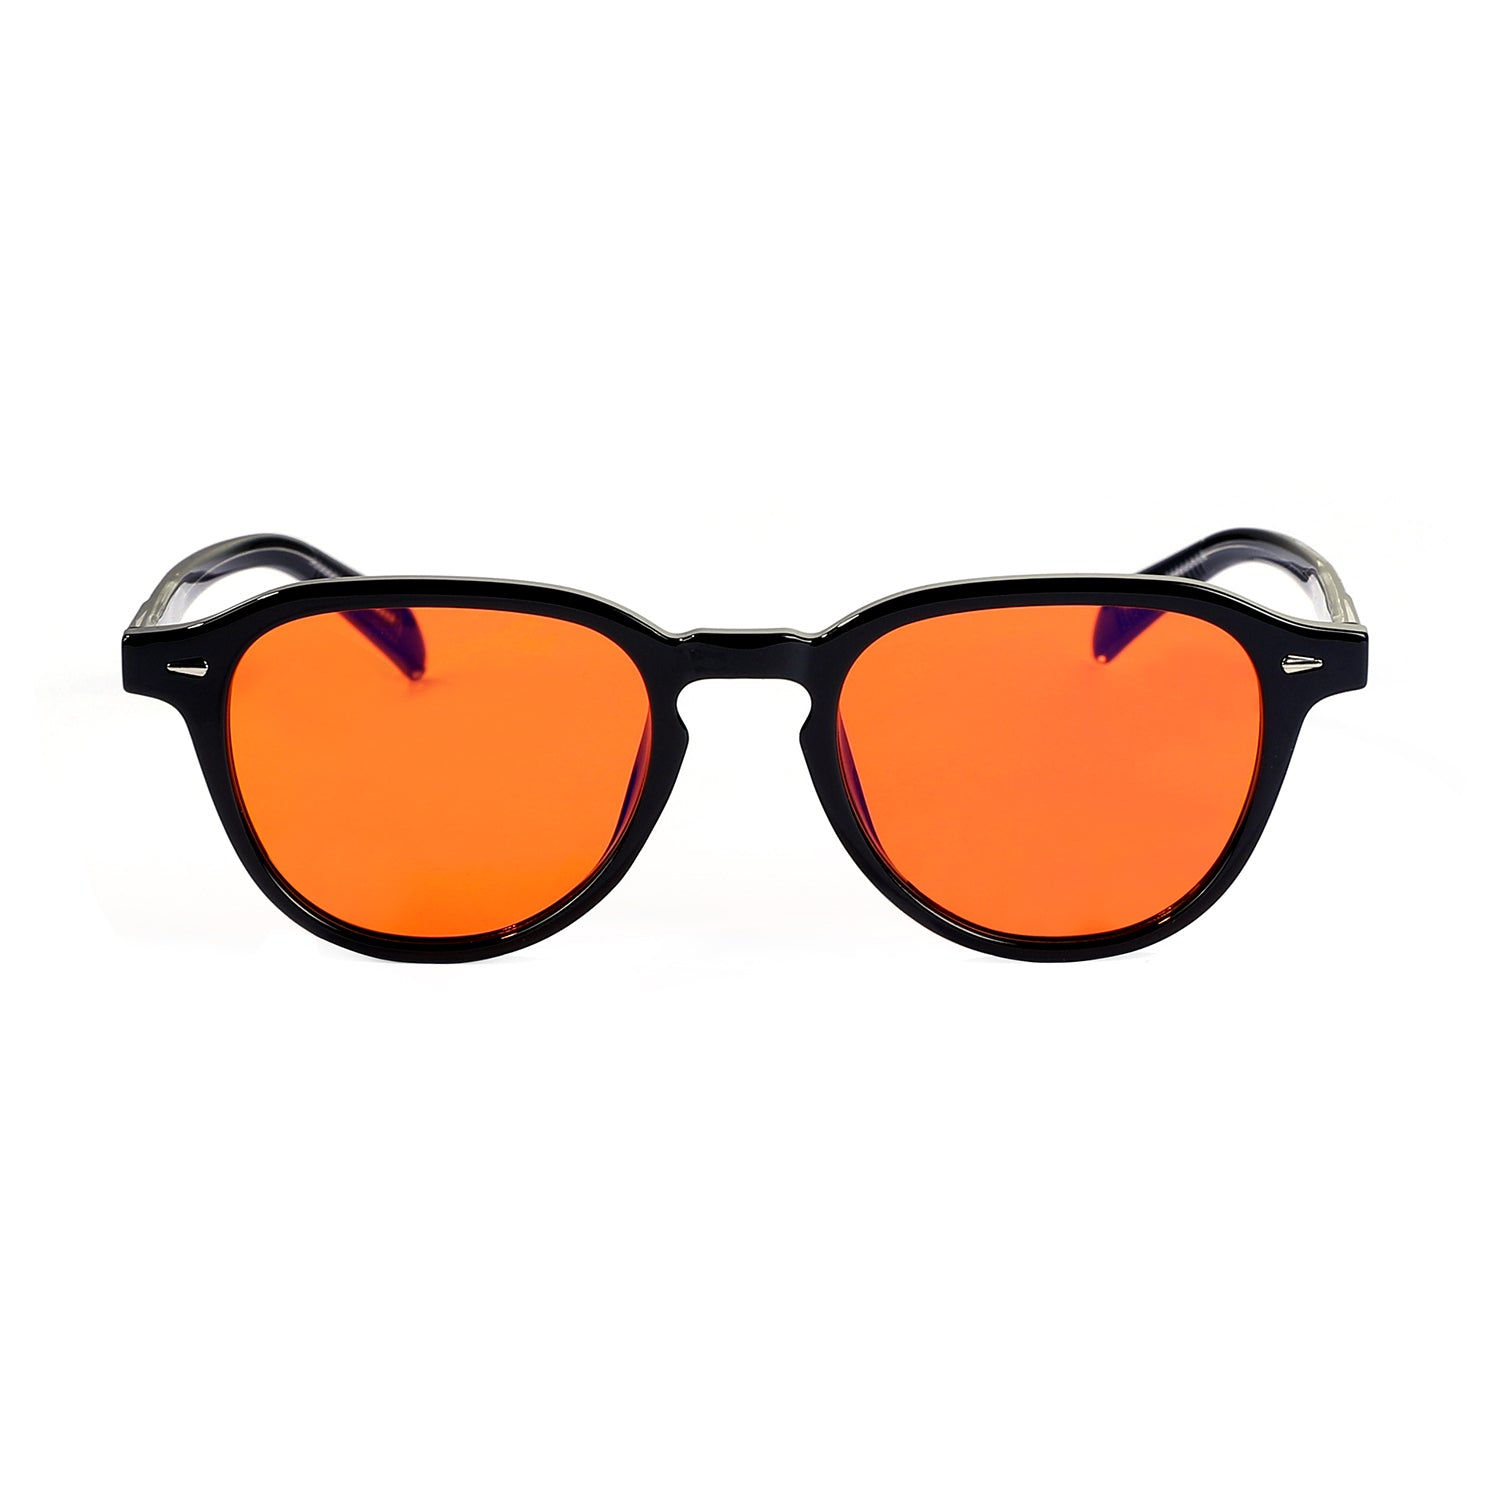 Black-framed sunglasses with orange lenses on a white background.